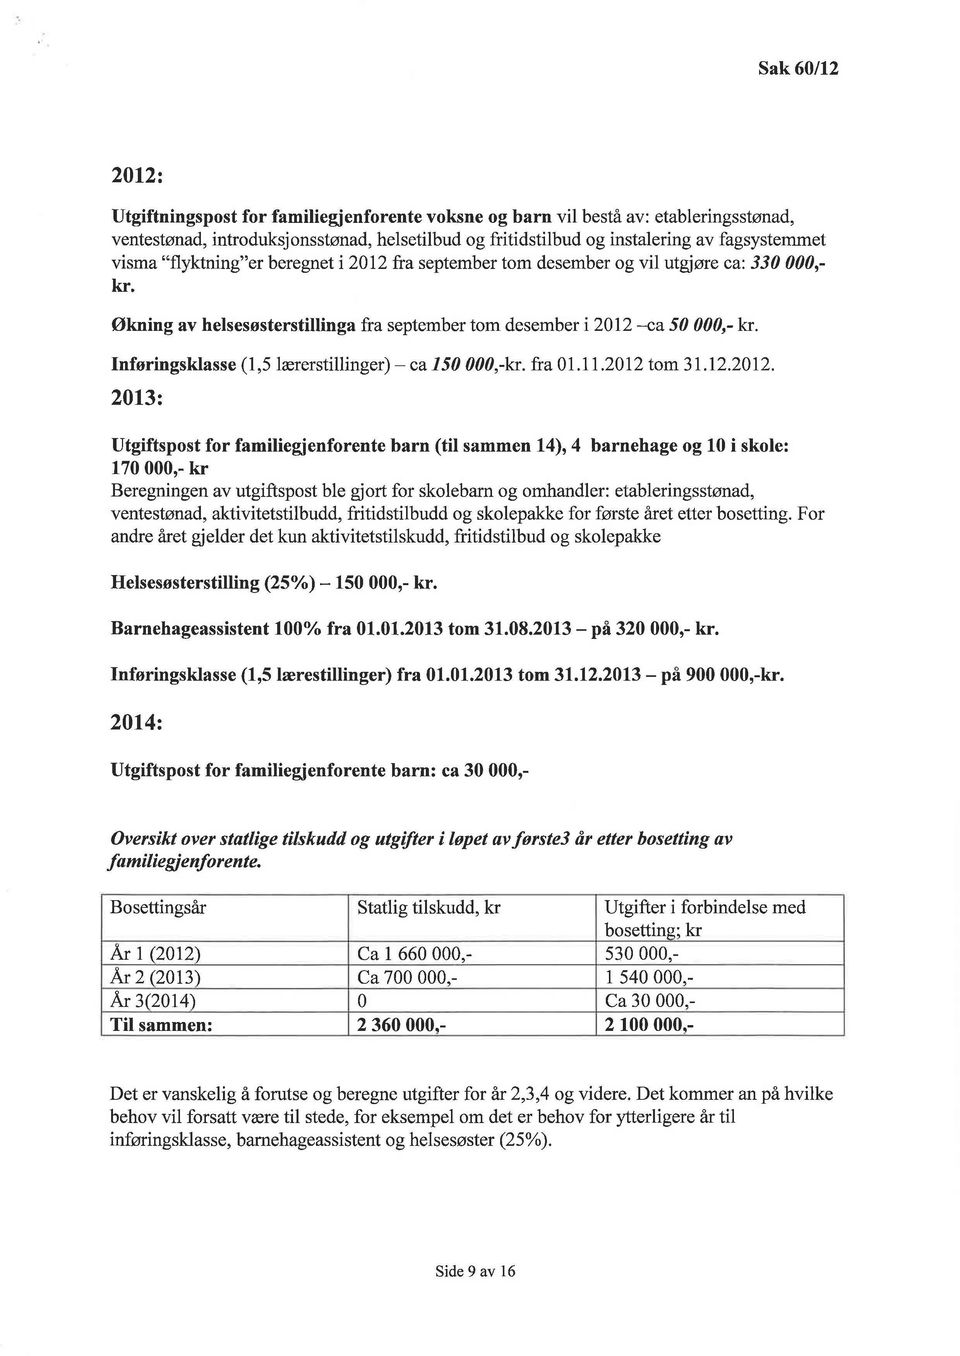 Inføringsklasse (1,5 lærerstillinger)- ca 150 000,-kr. fra 01.11.2012 